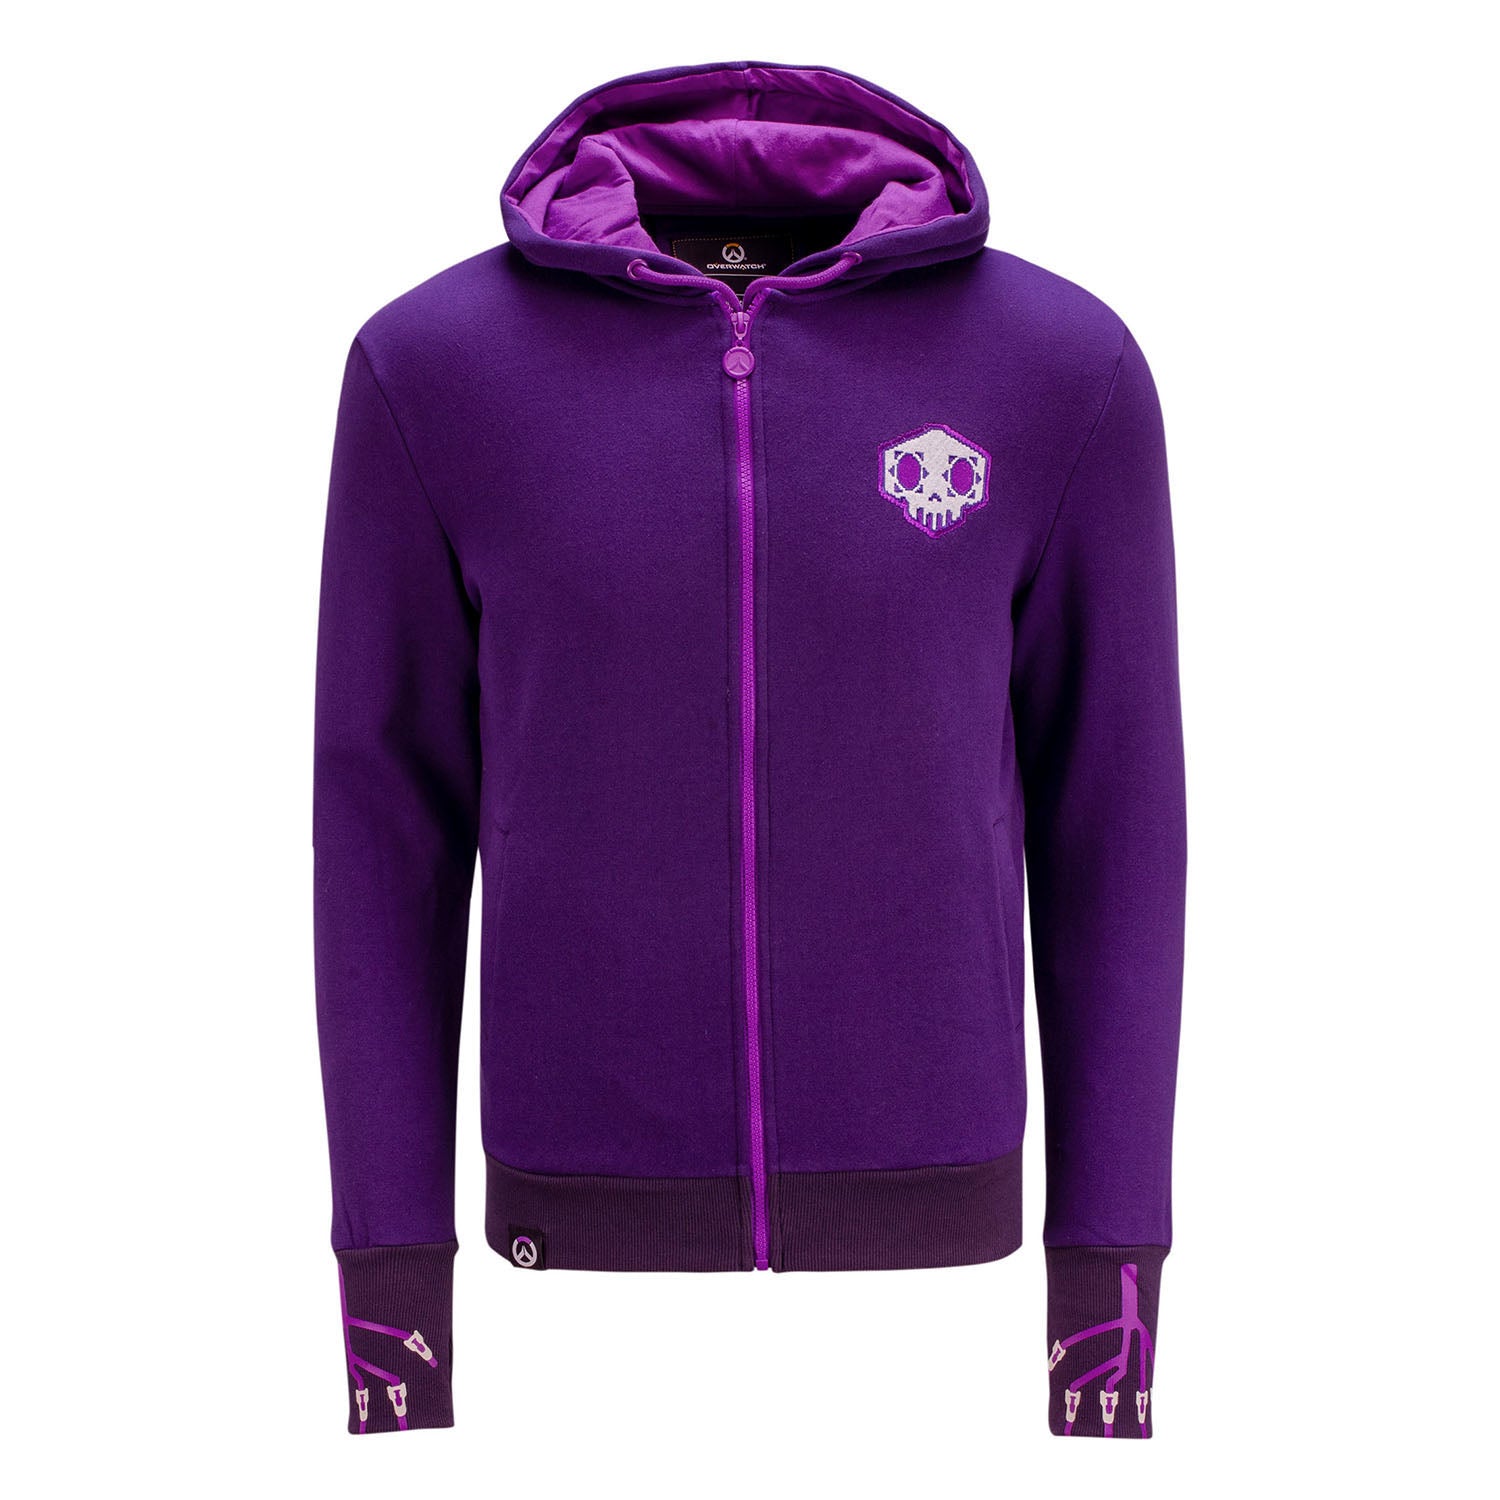 Overwatch Sombra Purple Zip-Up Hoodie - Front View